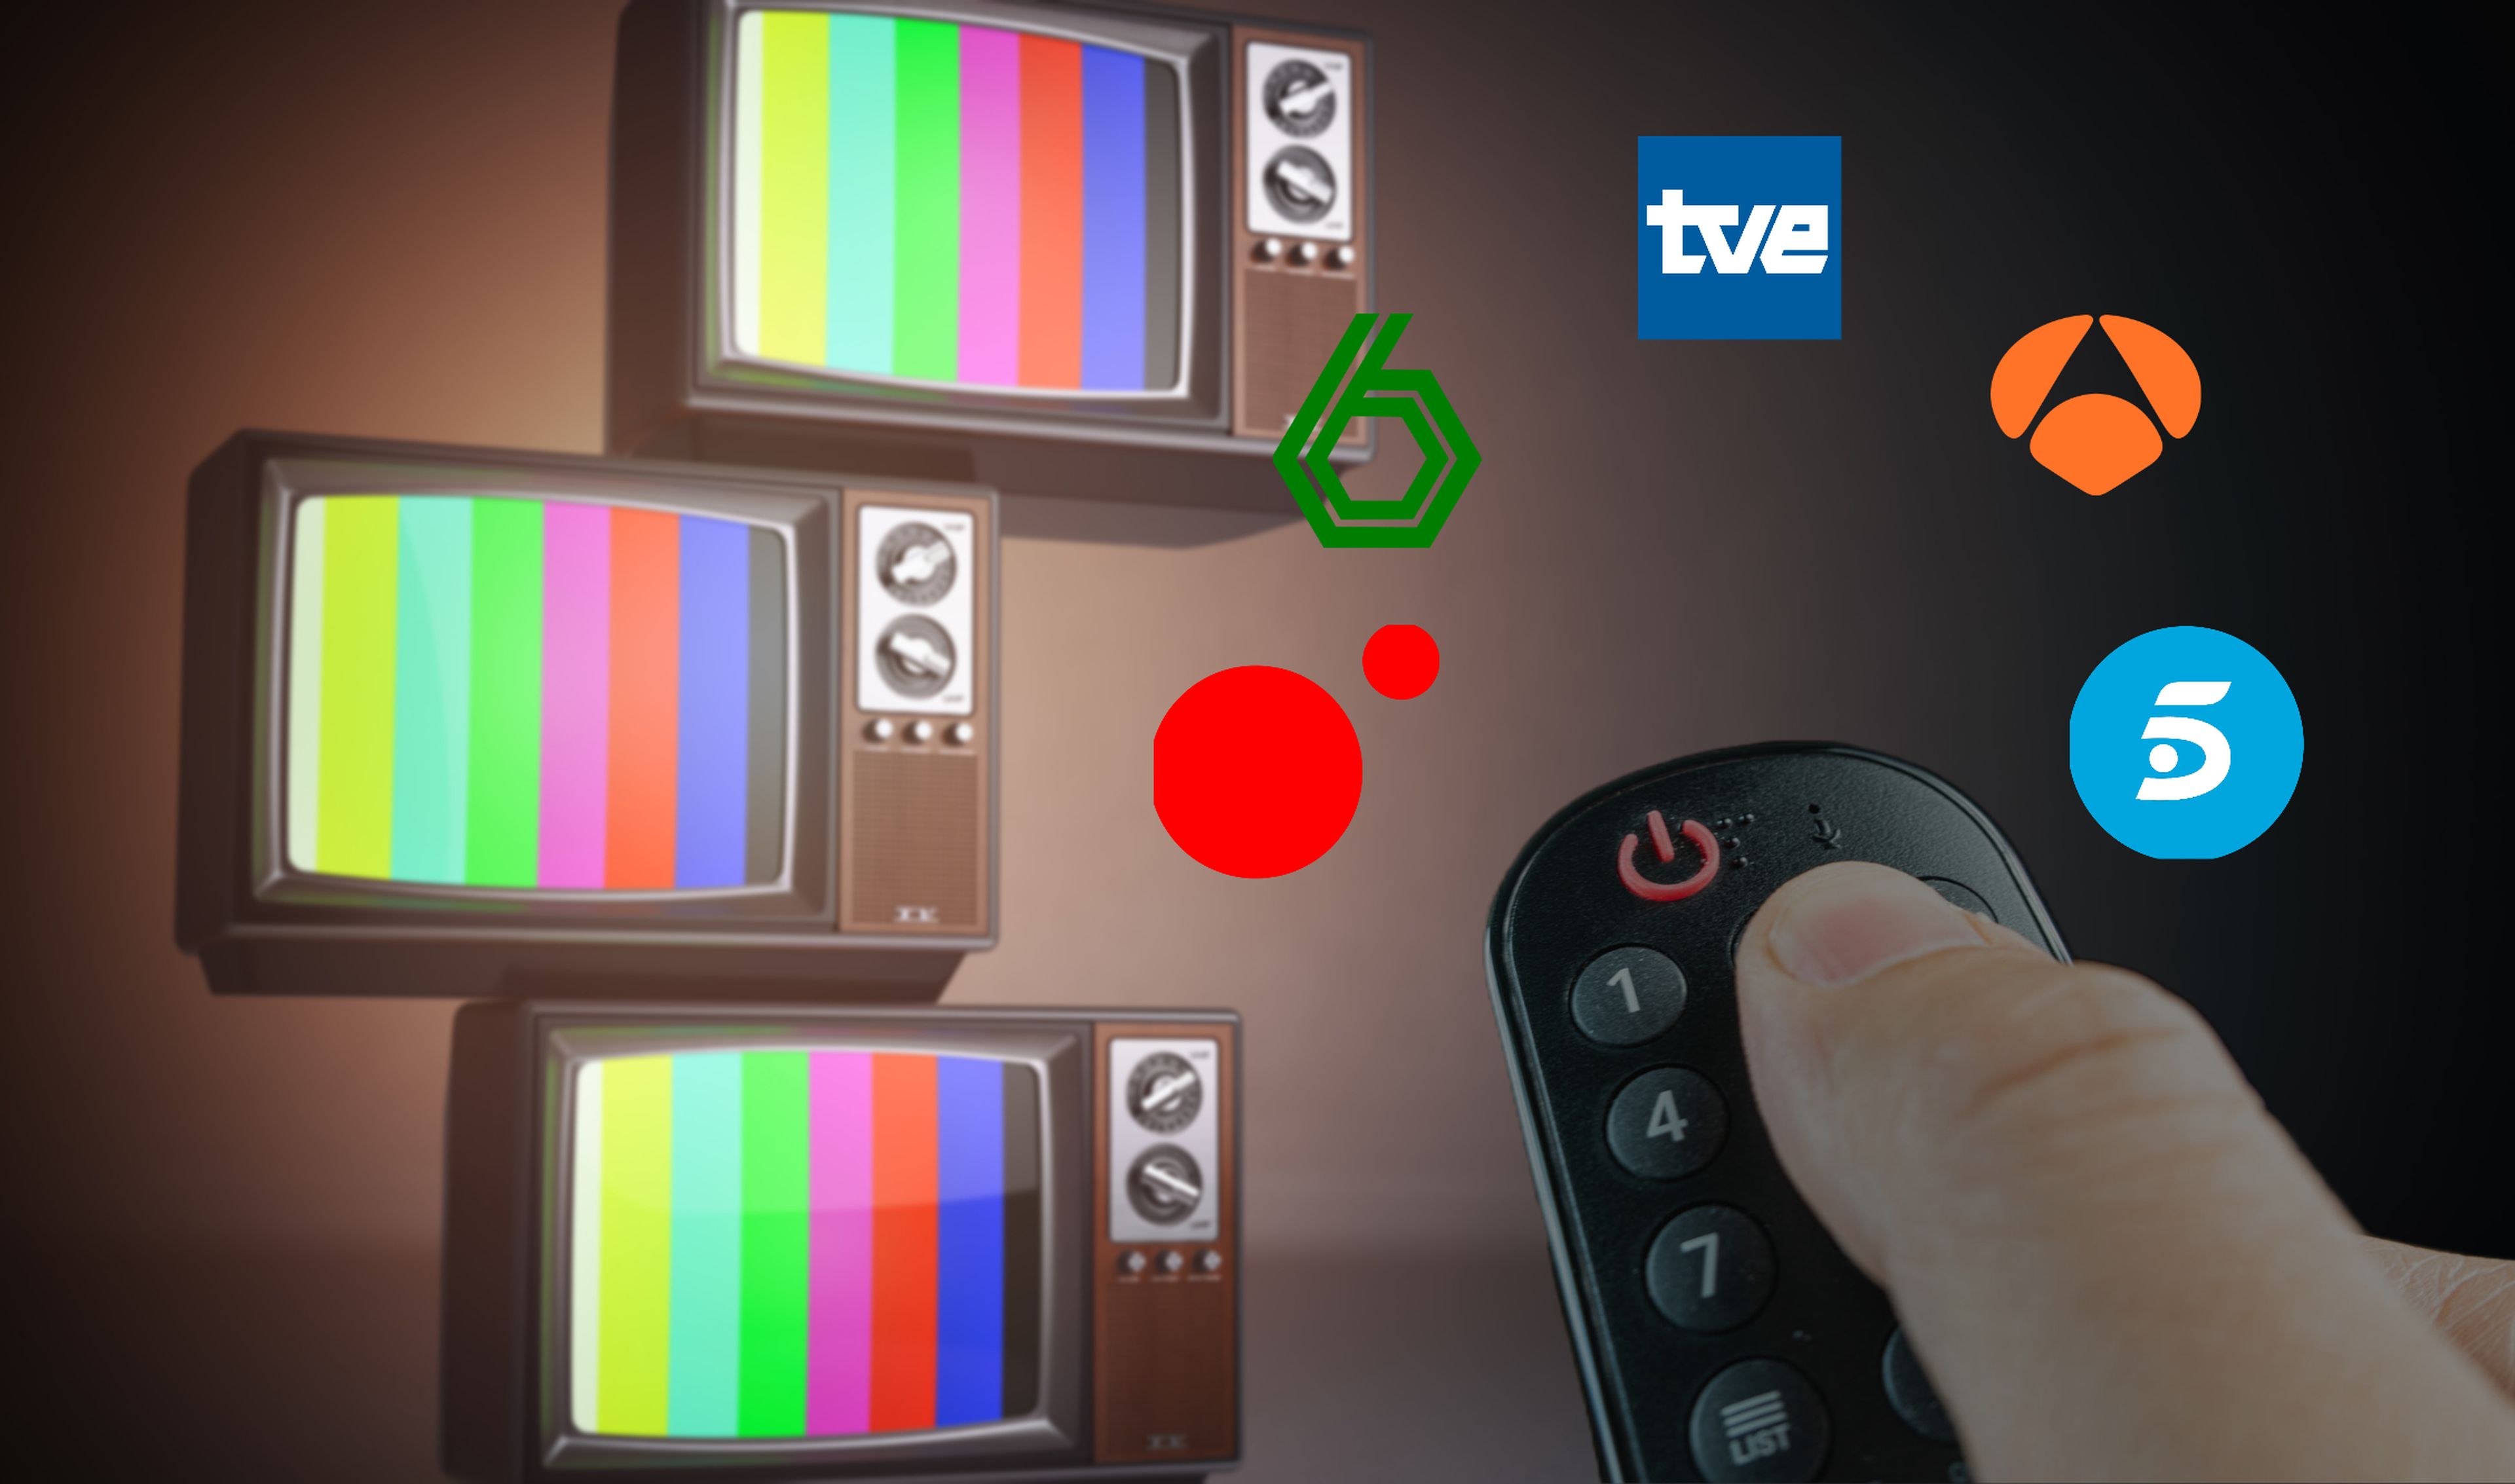 Ver la TDT gratis y sin sintonizar nada en tu smart TV: esta